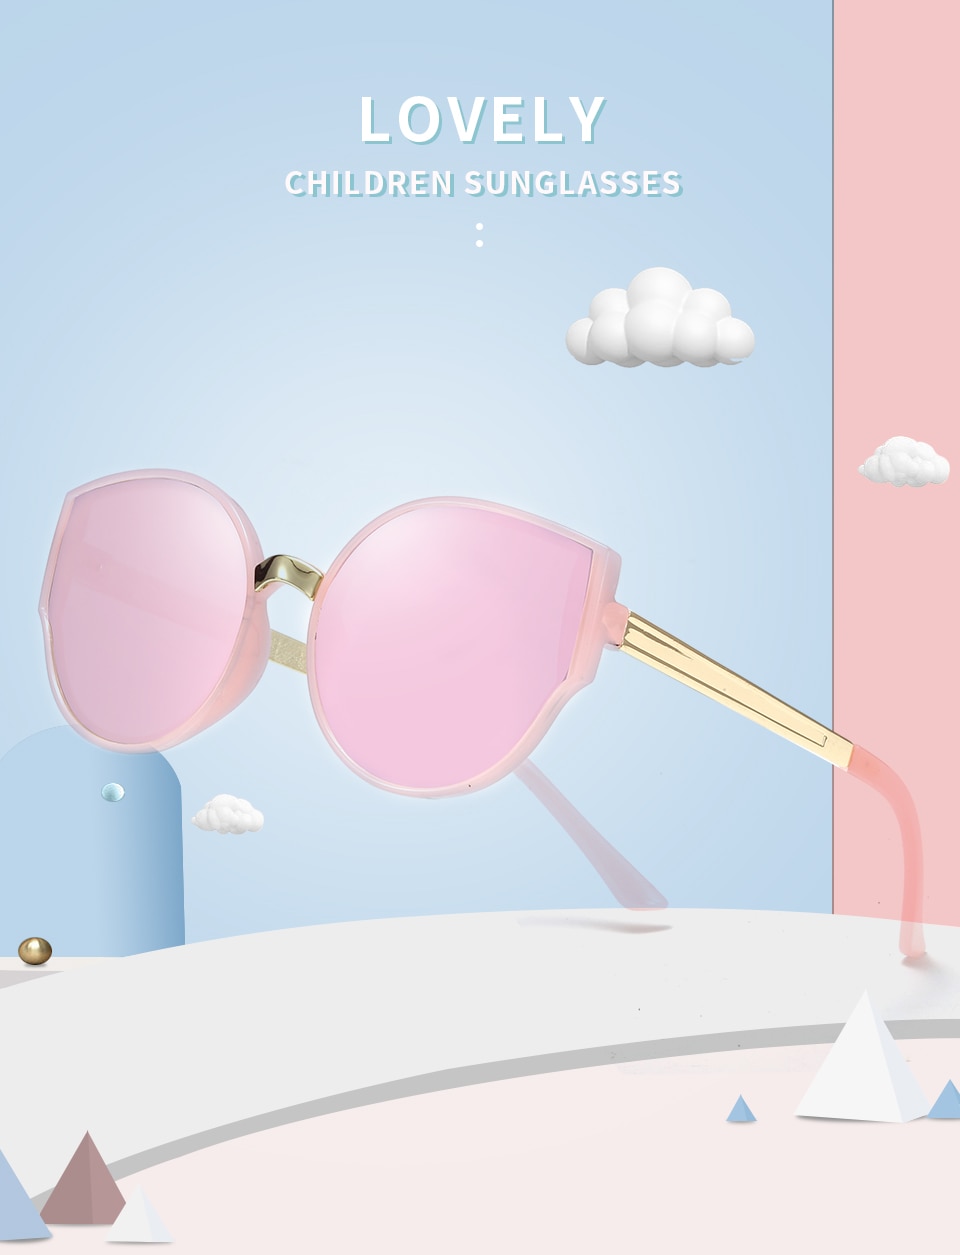 KOTTDO-vintage-cat-eye-sun-glasses-luxury-brand-kids-sunglasses-black-children-sunglasses-girls-boys-32890530308